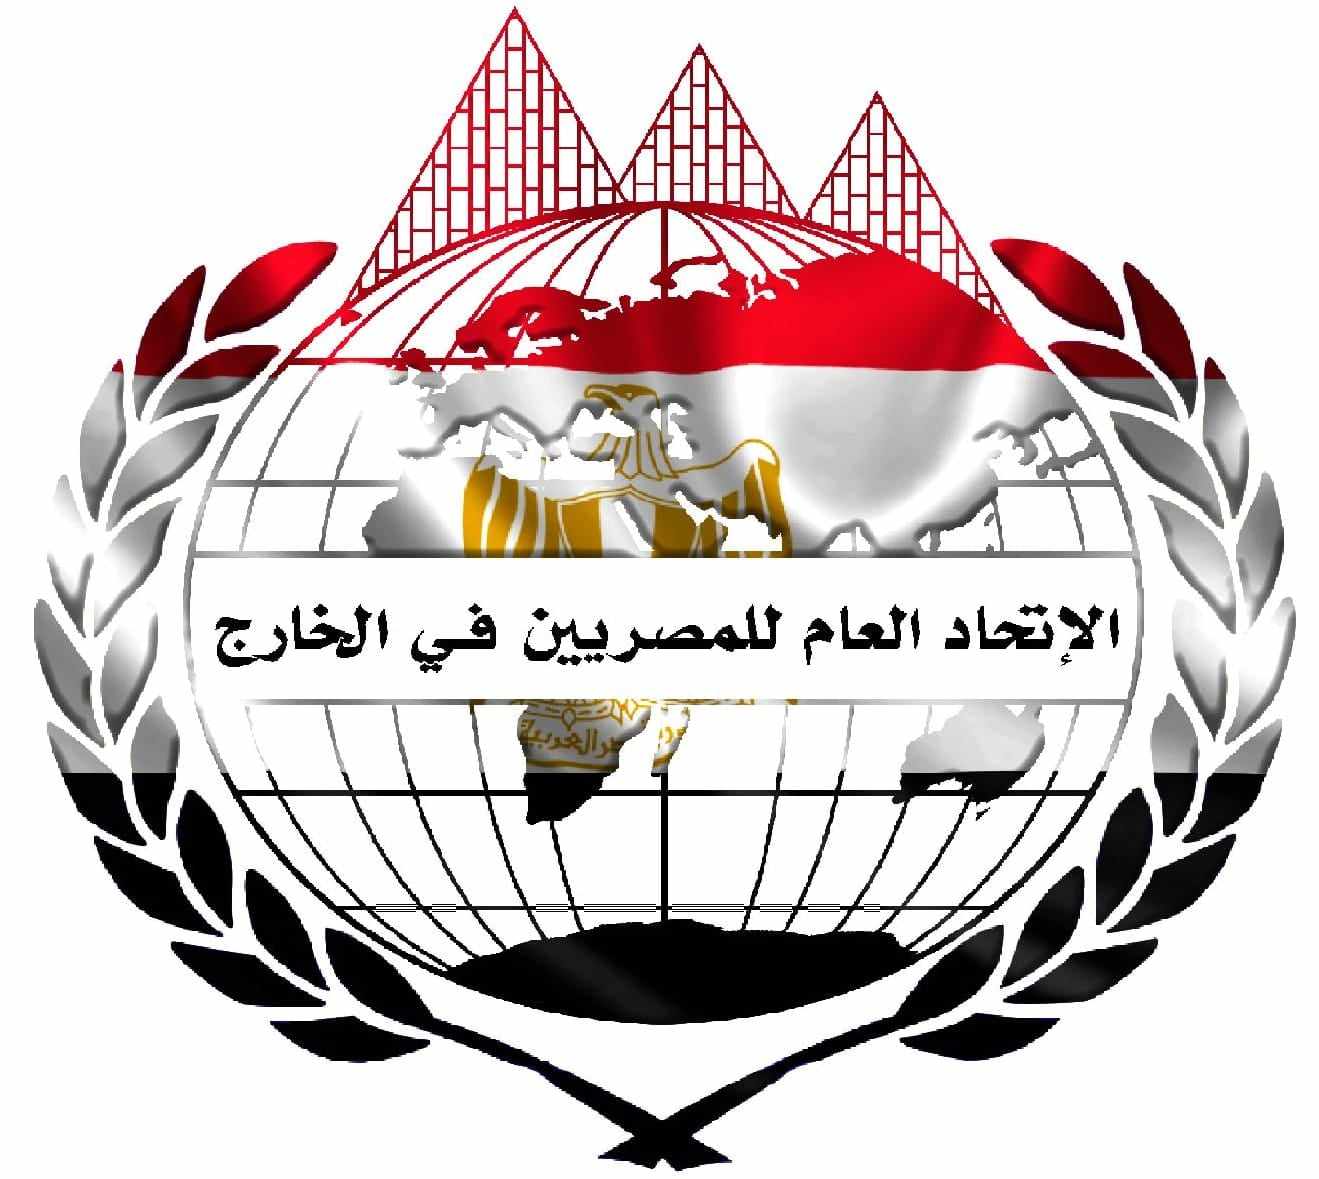 الاتحاد العام للمصريين في الخارج: بيان البرلمان الأوروبي محاولة لفرض الوصاية على مصر 

